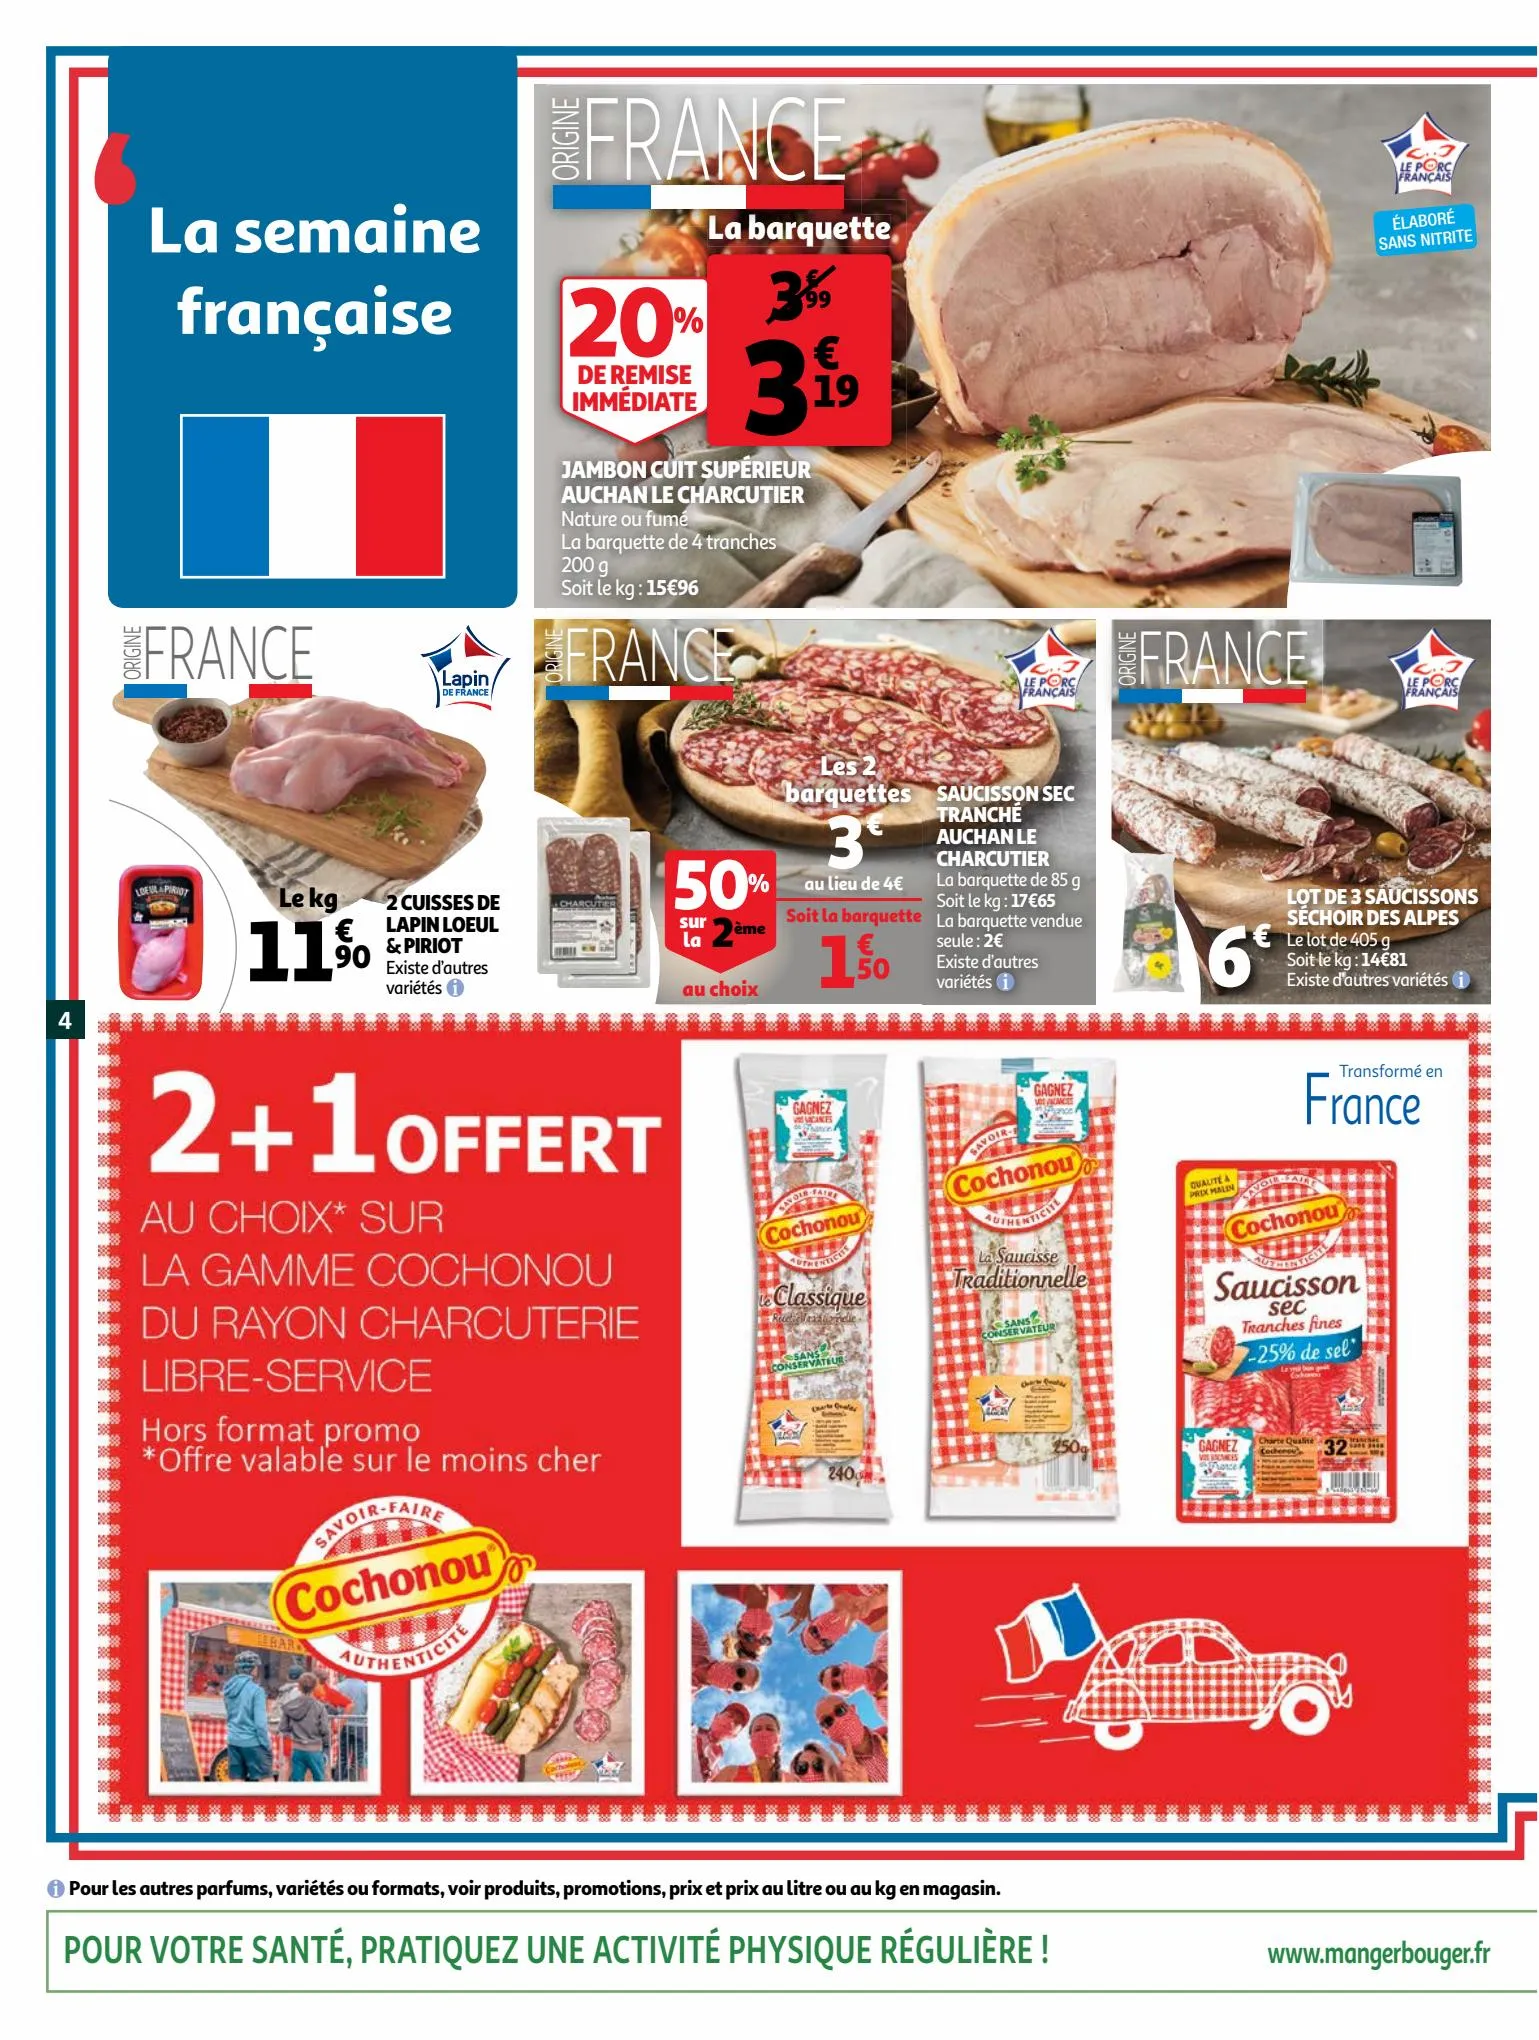 Catalogue La semaine française, page 00004